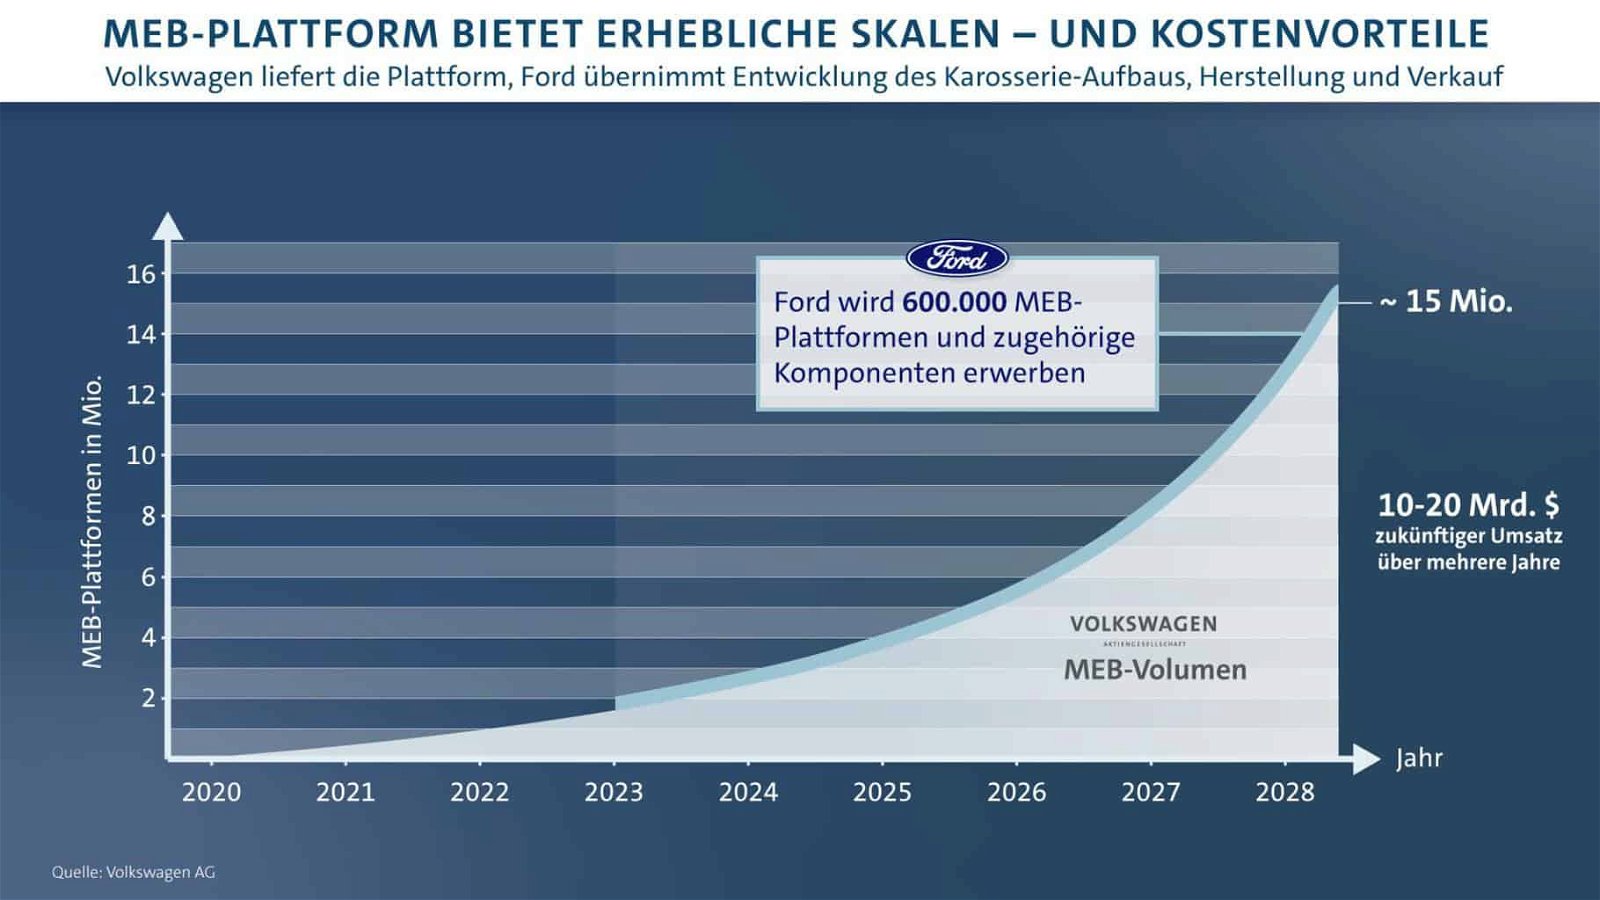 Ford wird ein Elektrofahrzeug für Europa bauen auf Basis des Modularen E-Antriebskastens (MEB) von Volkswagen – ab 2023 sollen innerhalb von mehreren Jahren mehr als 600.000 Einheiten produziert werden